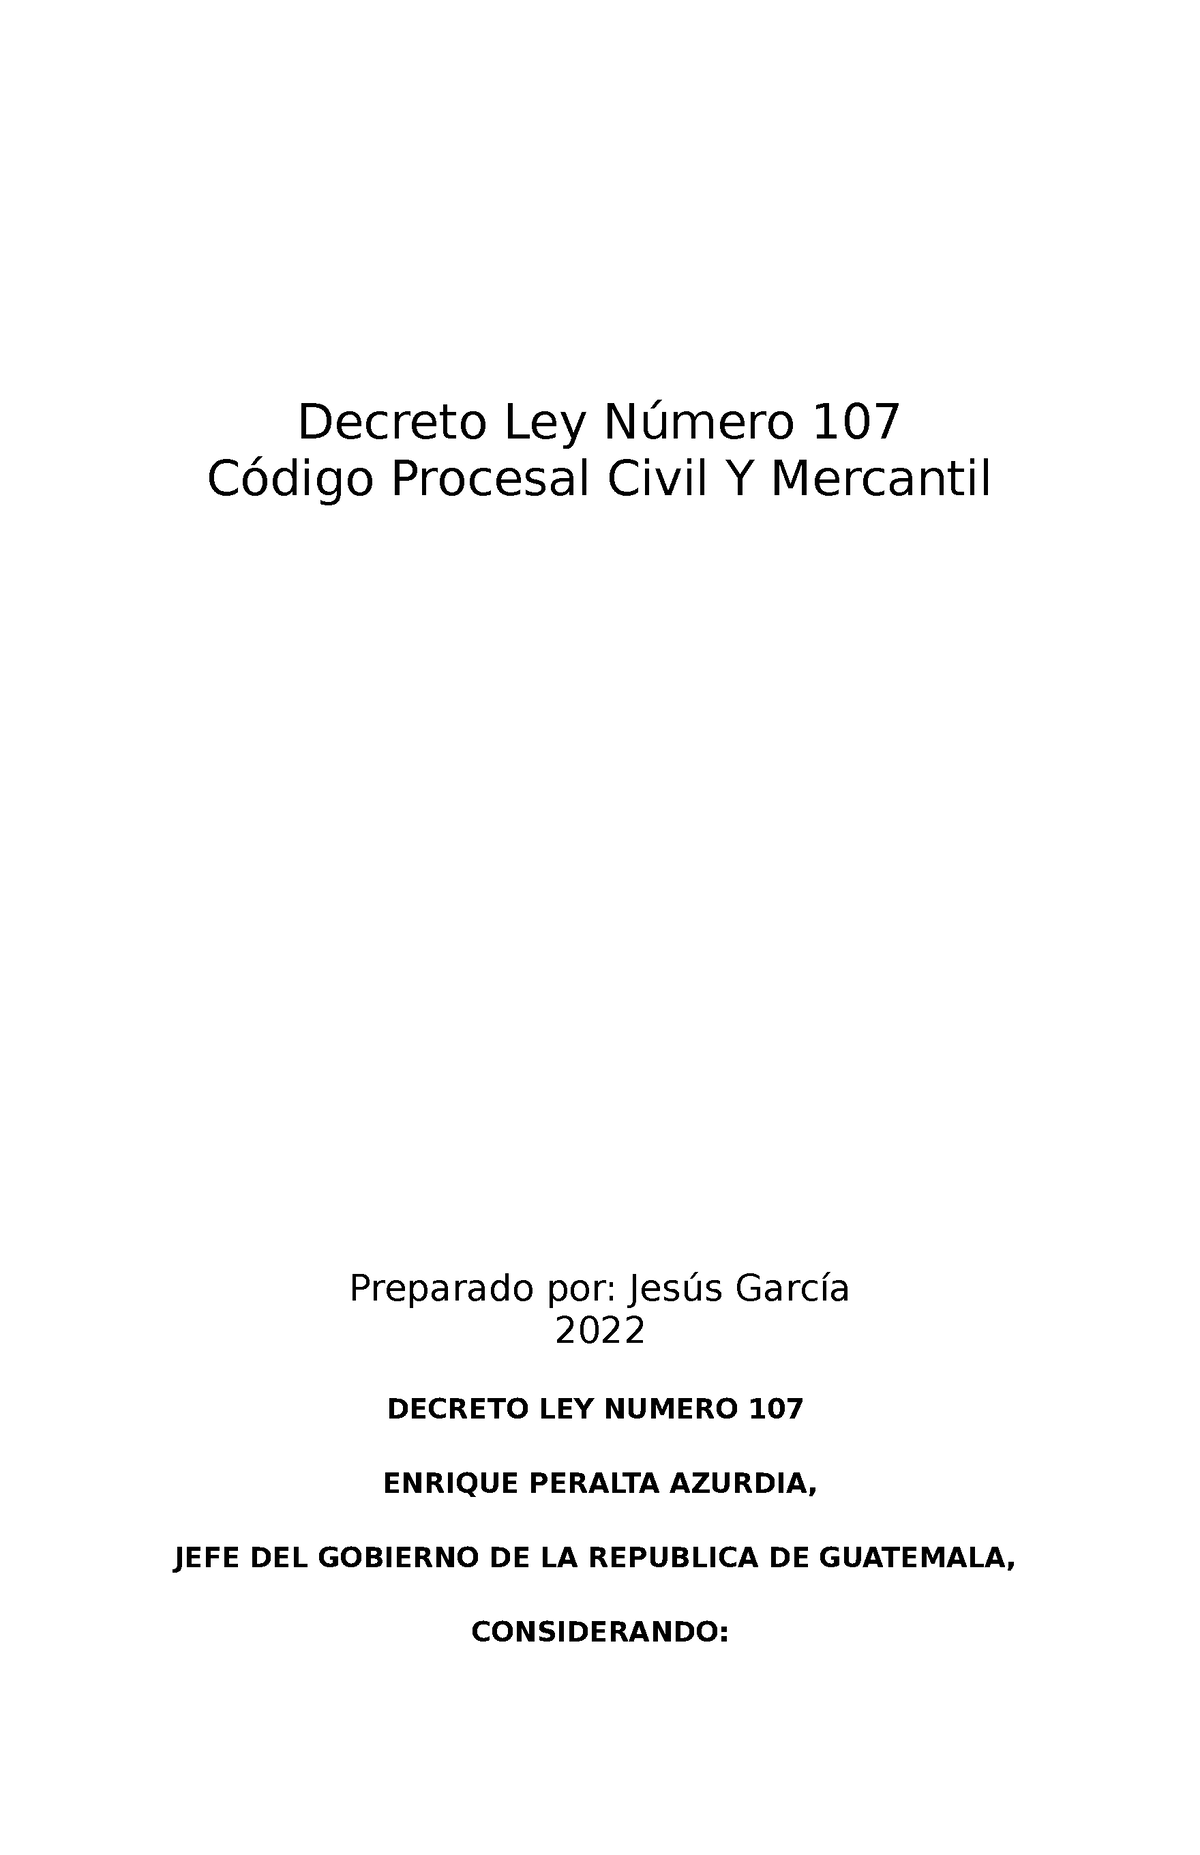 Codigo Procesal Civil Y Mercantil Estudio Decreto Ley Número 107